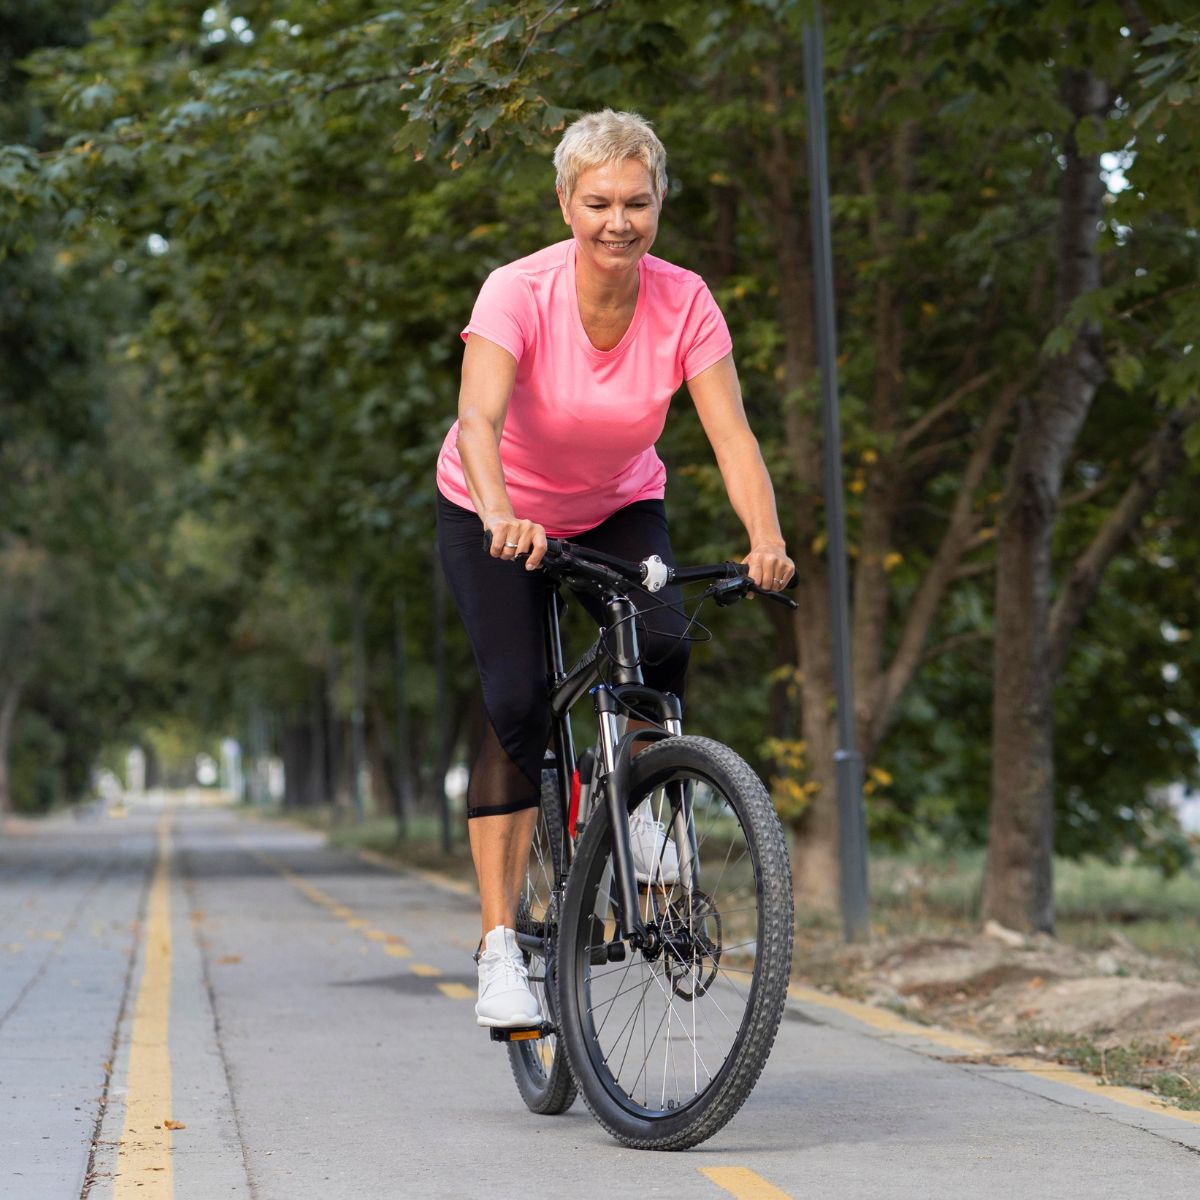 pedalea-hacia-una-vida-saludable-como-el-ciclismo-te-ayuda-a-perder-peso-y-mejorar-tu-salud